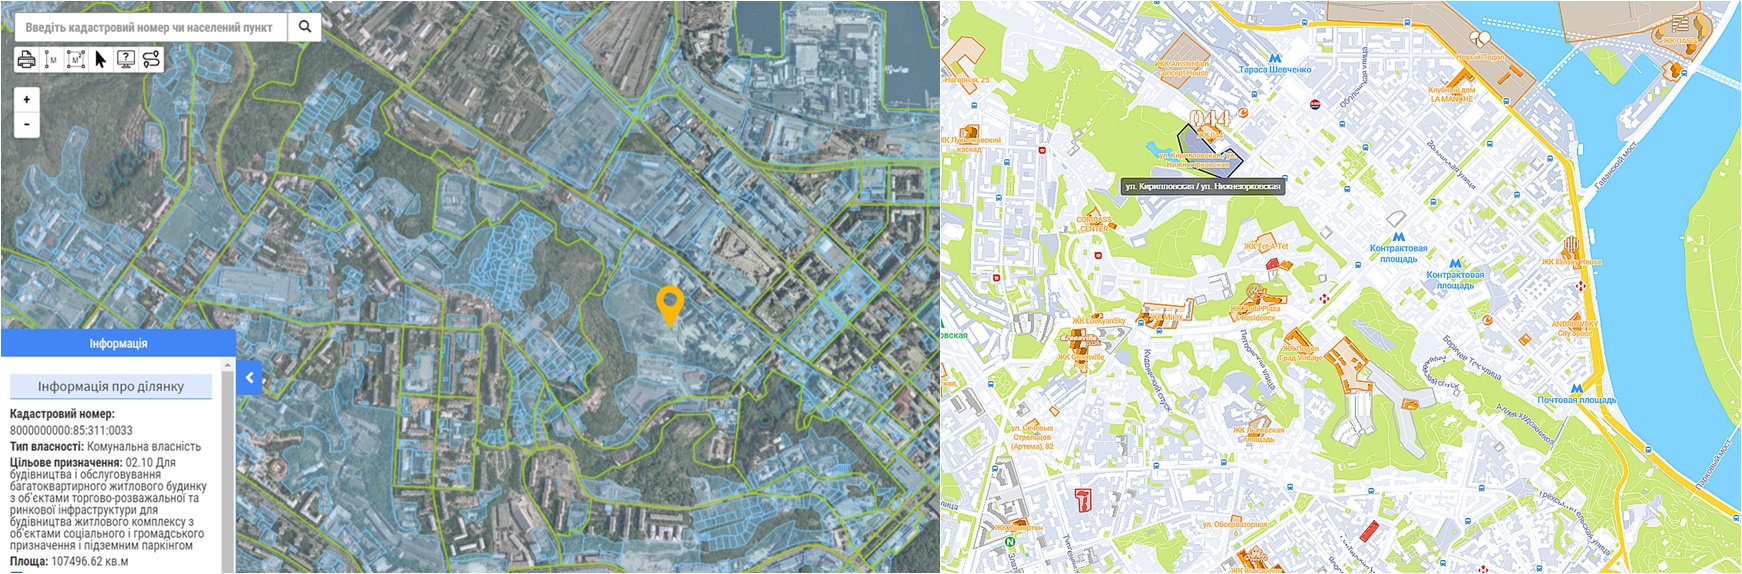 Проект ЖК между улицами Кирилловская и Нижнеюрковская данные кадастра и на карте